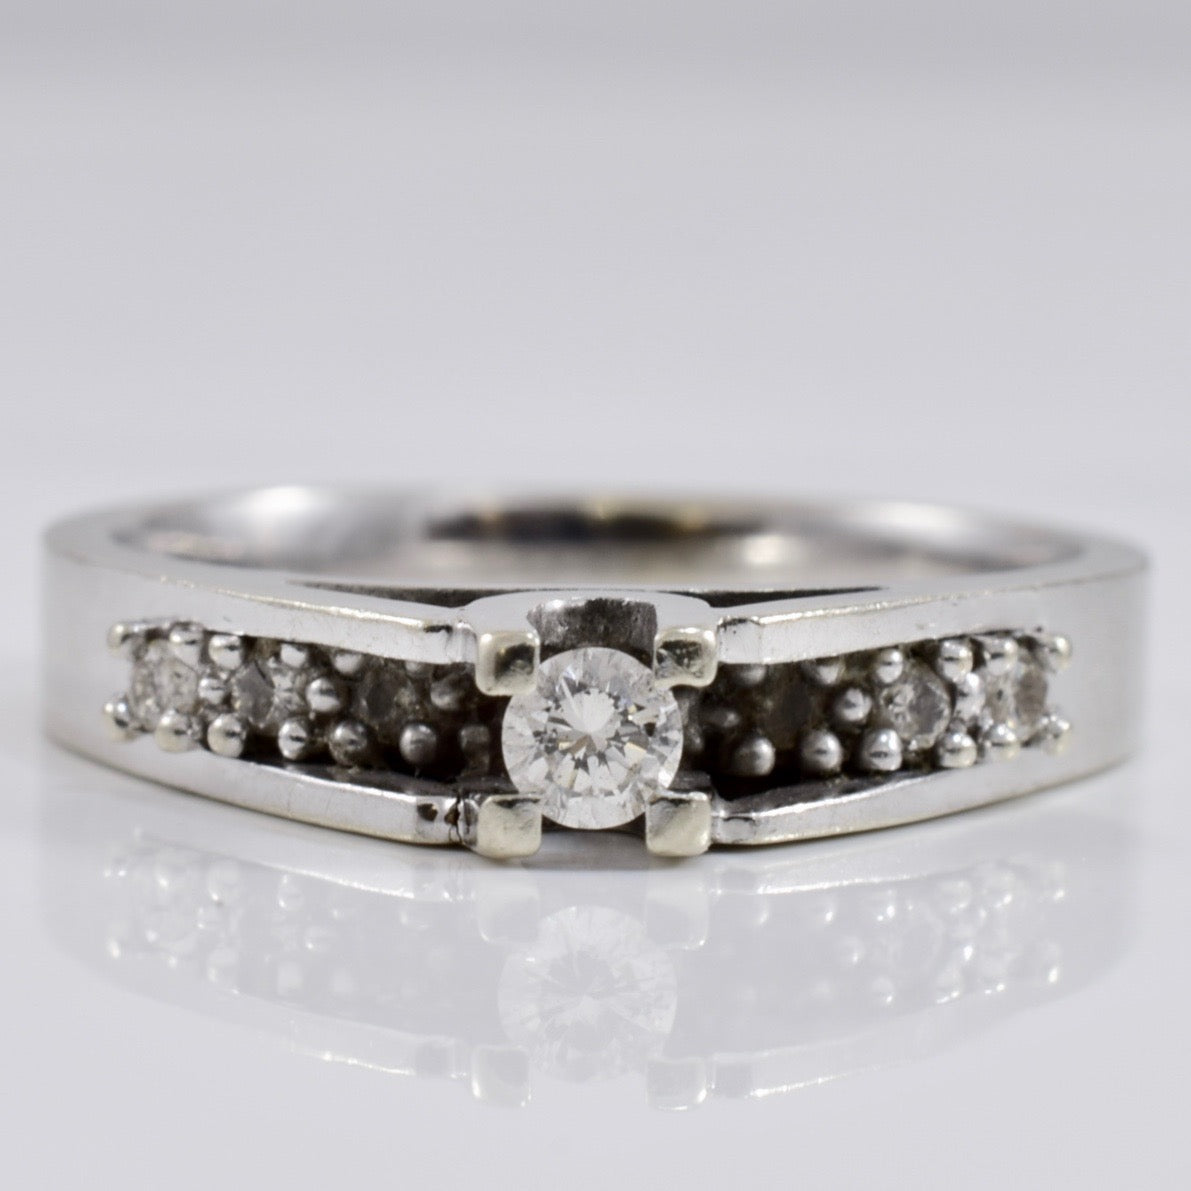 Diamond Ring with Diamond Accent Stones | 0.17 ctw SZ 6 |